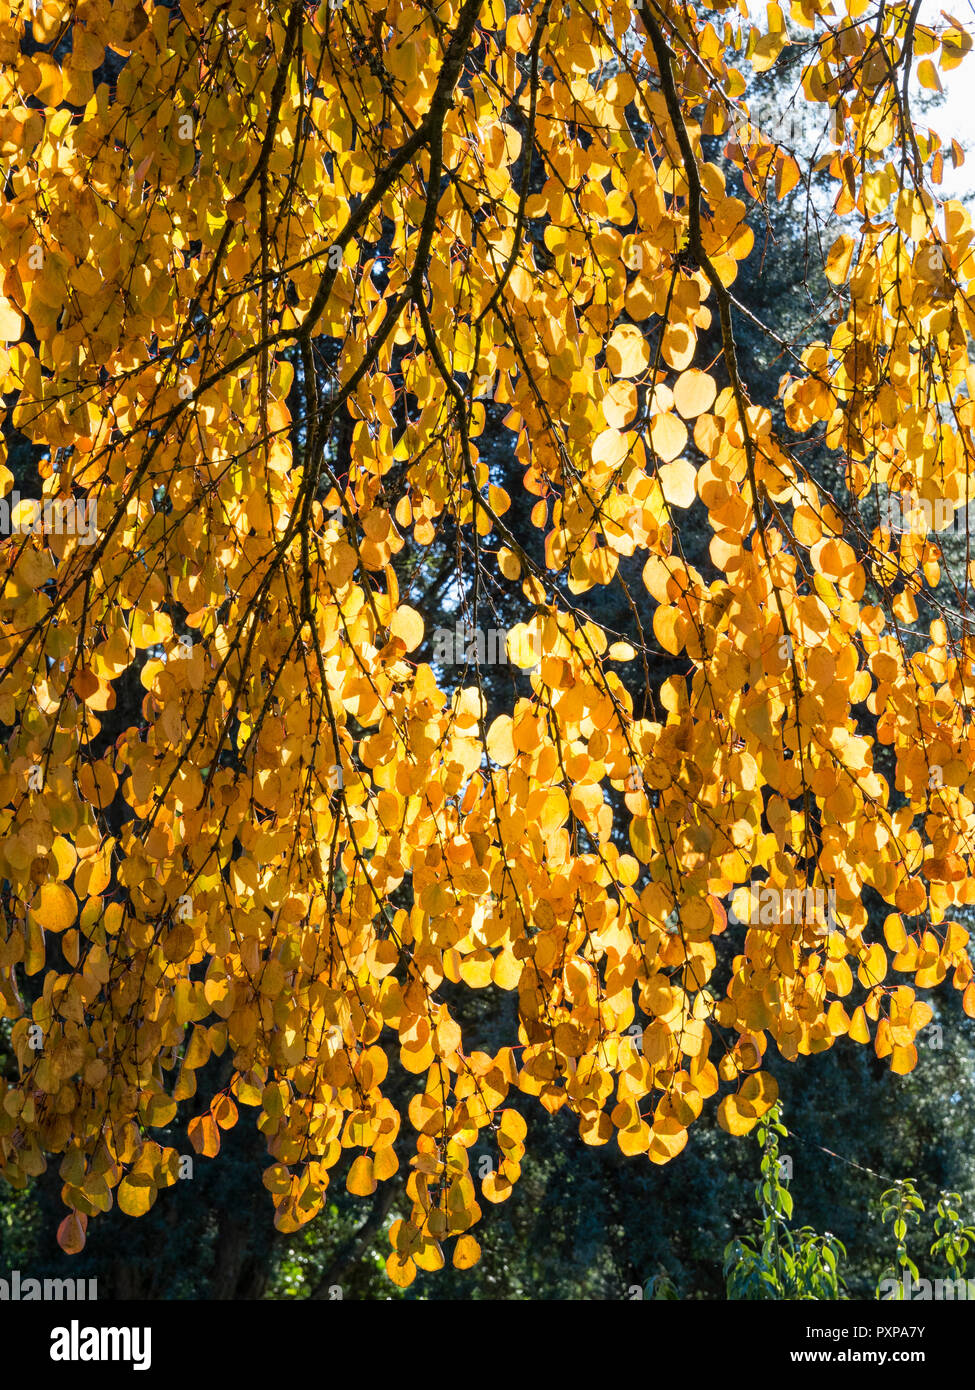 Backlit autumn foliage of the Japanese Katsura tree, Cercidiphyllum japonicum Stock Photo